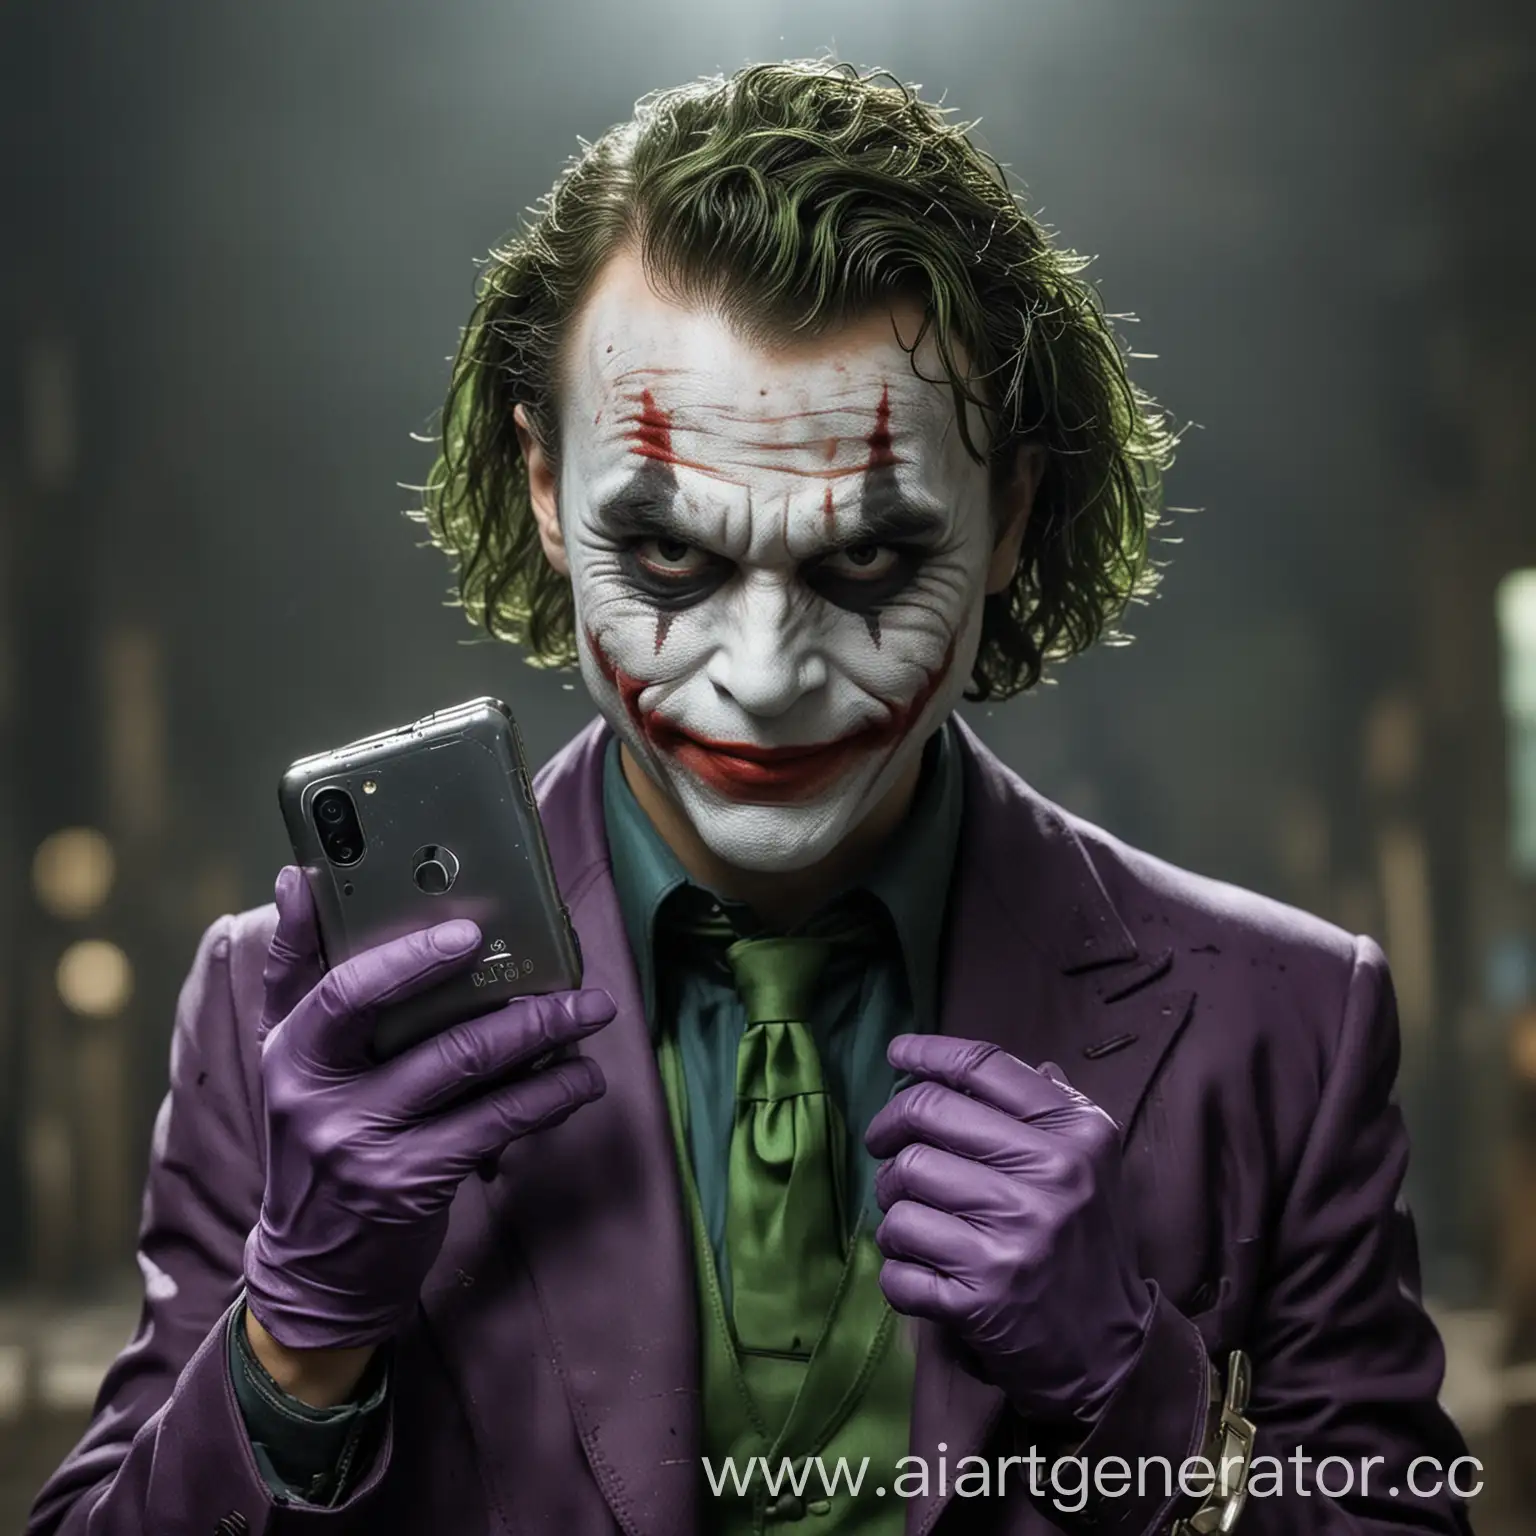 Vivo-Smartphone-Battle-Against-the-Joker-HighTech-Showdown